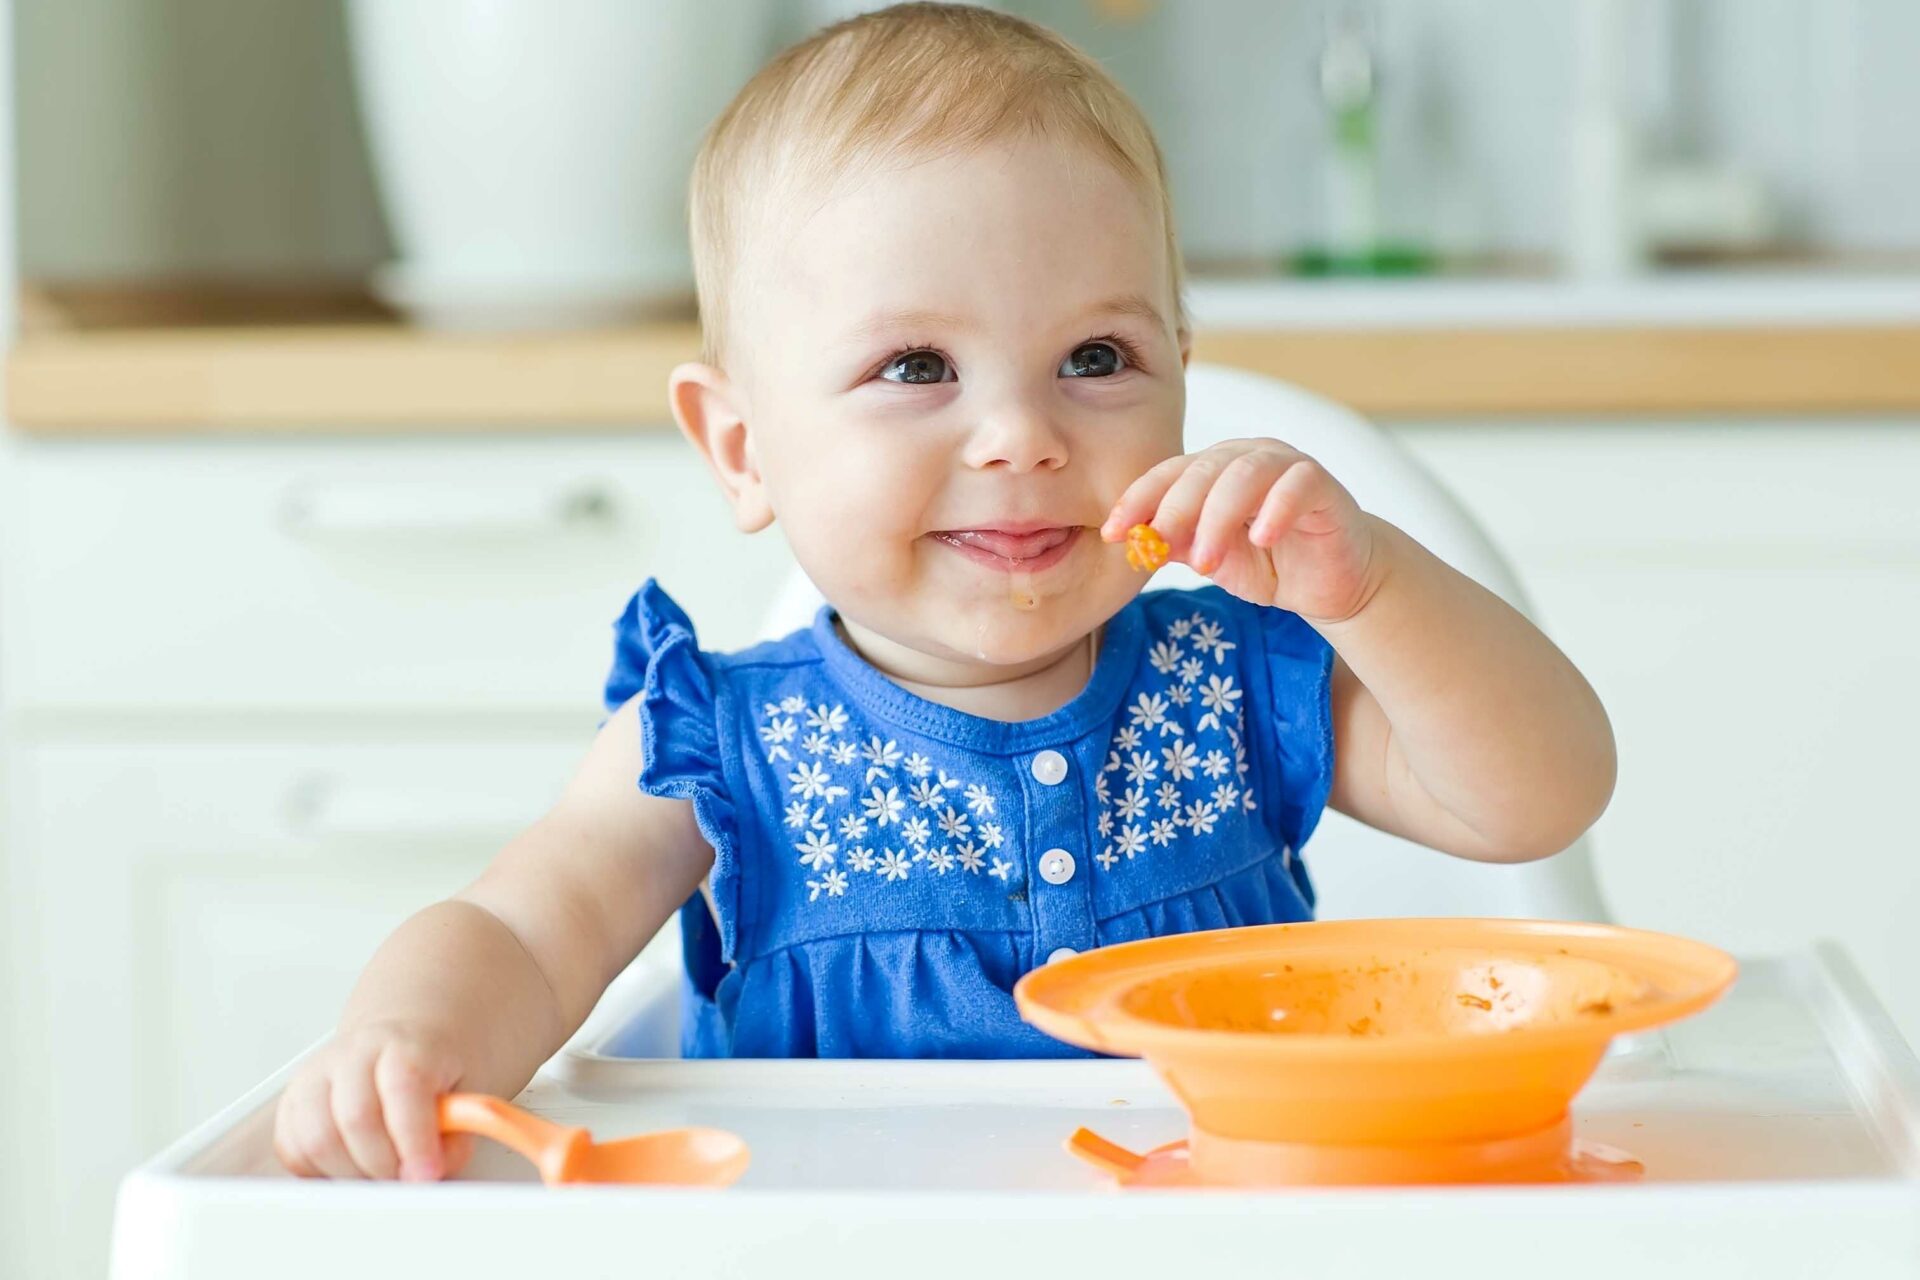 pokarm stały w diecie dziecka, małe dziecko je zupę z pomarańczowej miseczki